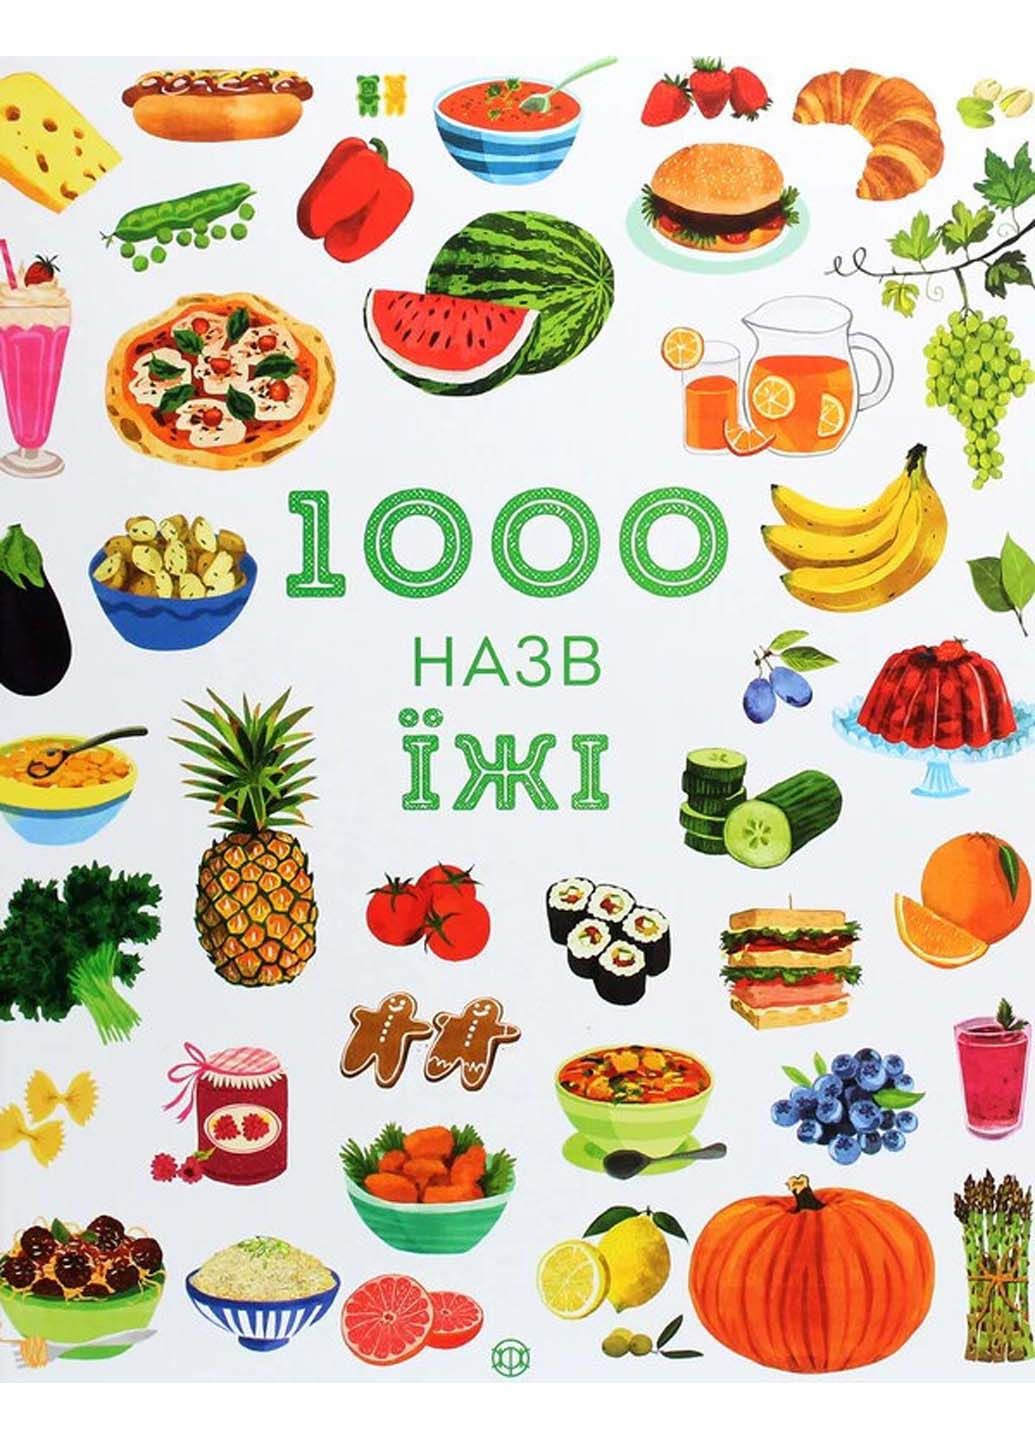 Книга 1000 назв їжі Ніккі Дайсон 2020р 40 с Жорж (293057987)